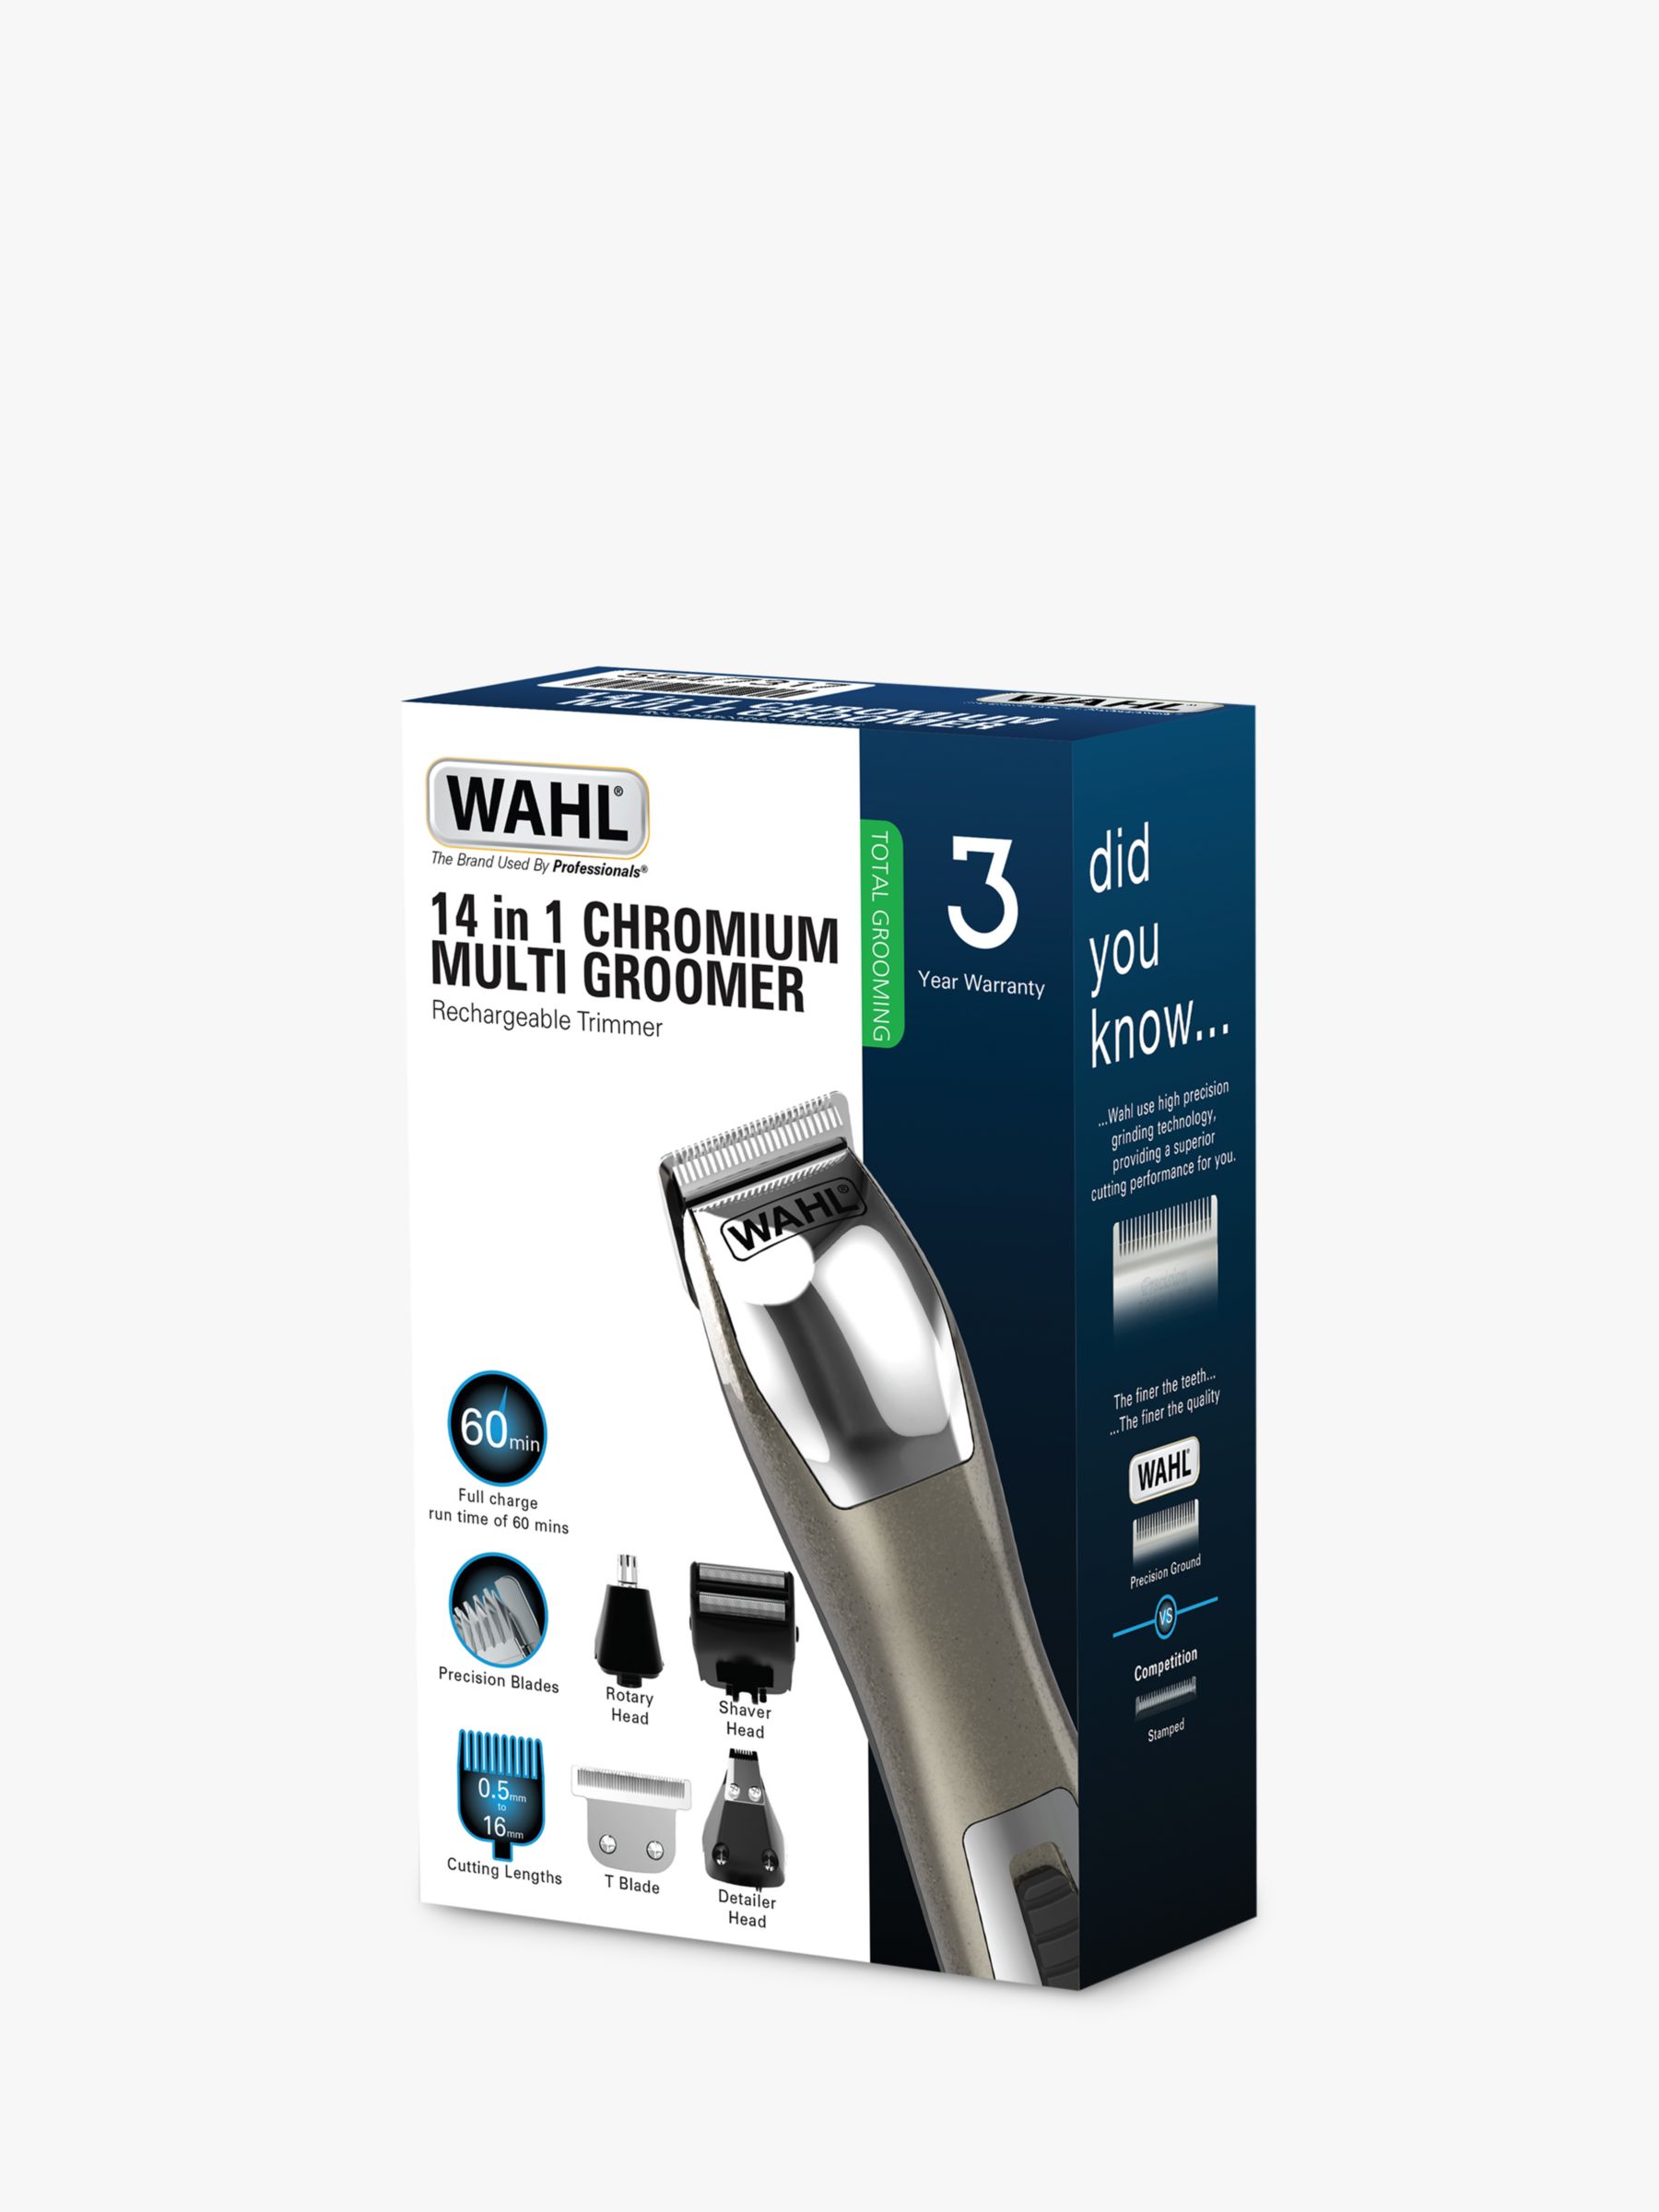 wahl trimmer model 9855